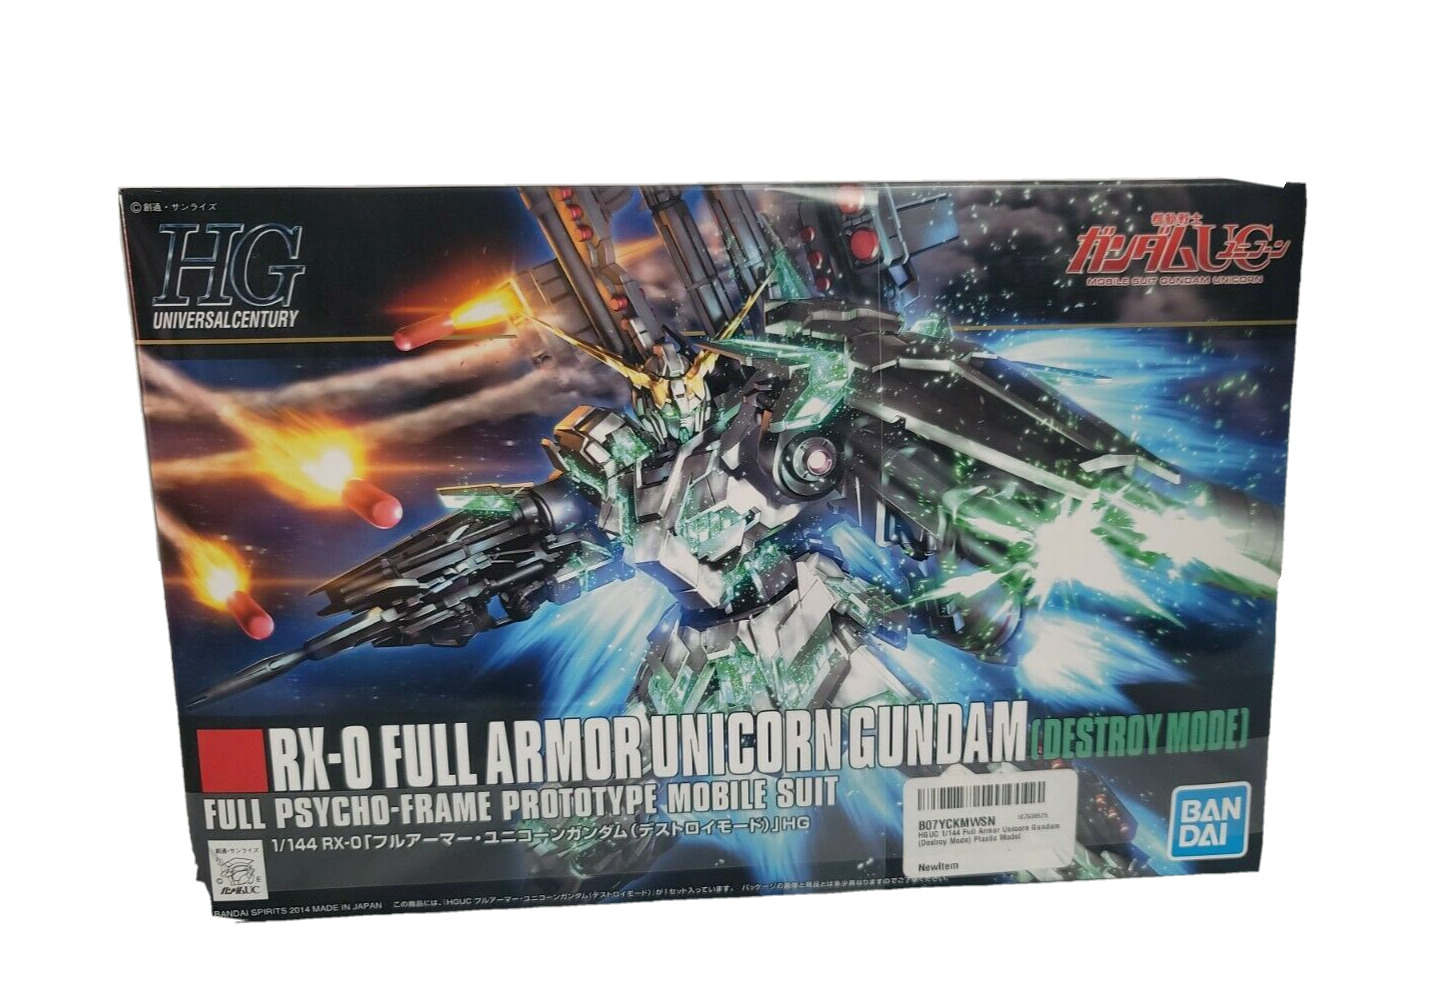 HGUC Gundam UC FULL ARMOR UNICORN GUNDAM (Destroy Mode) 1/144 Plastic model kit